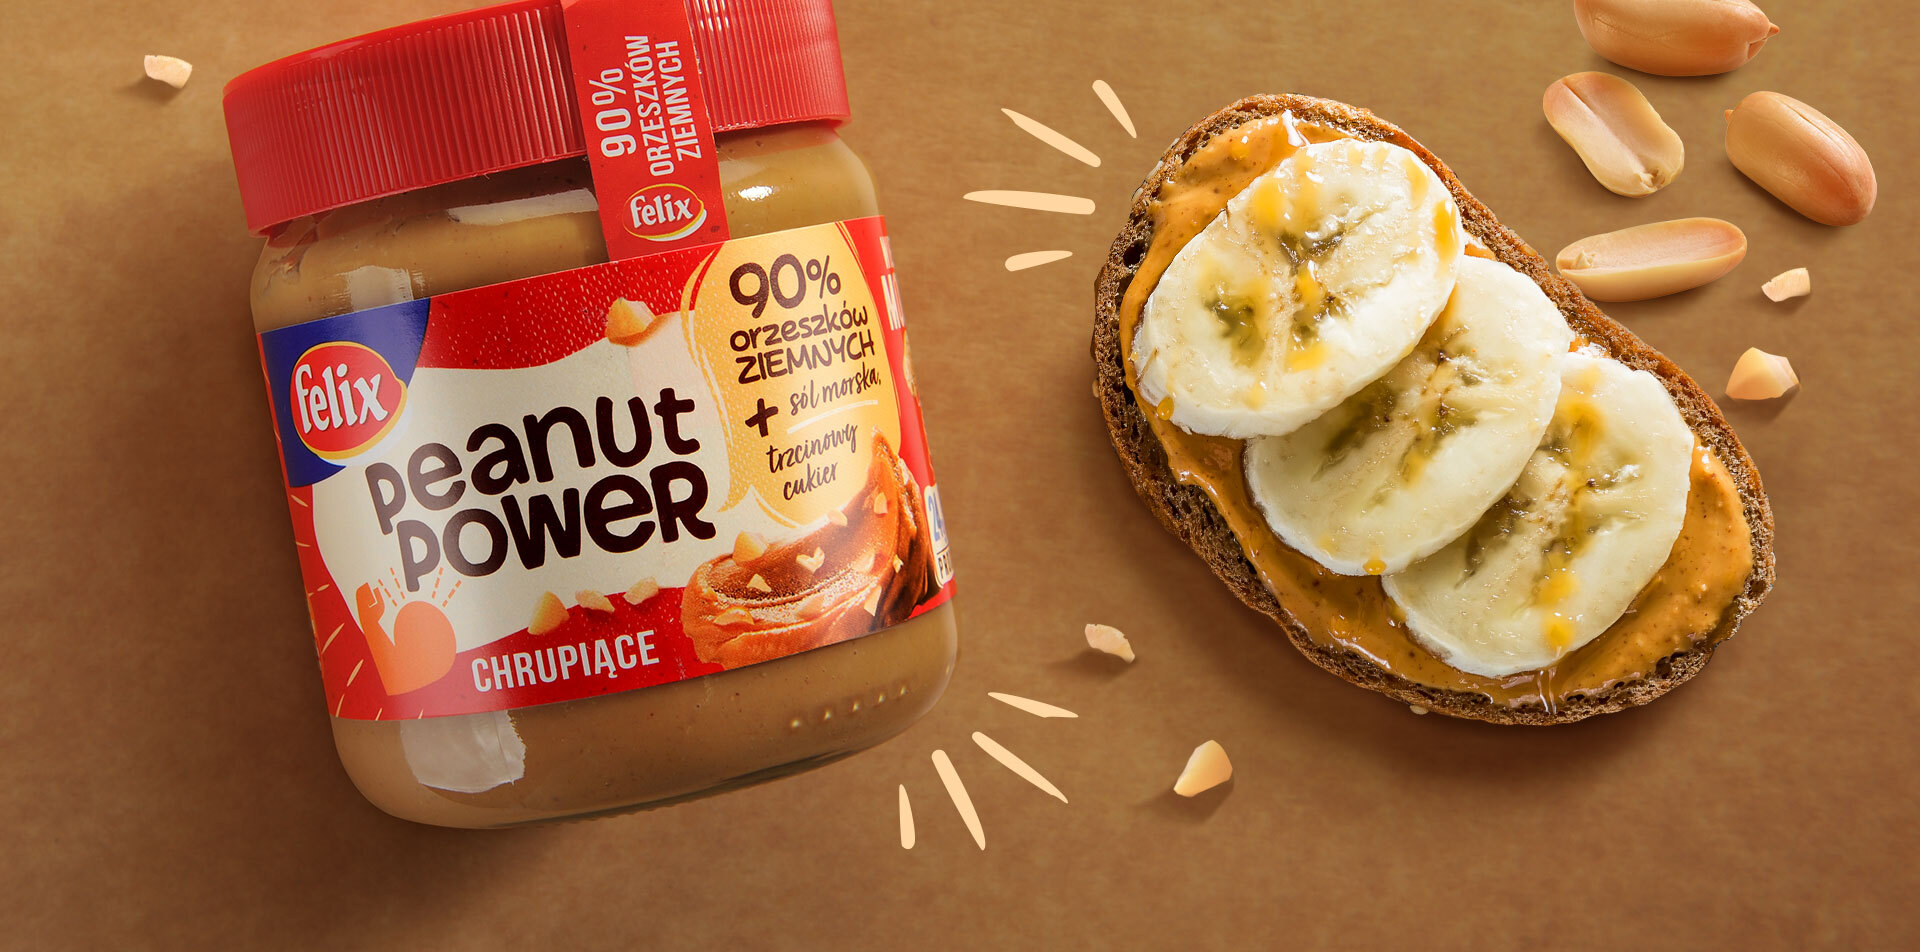 Design opakowań masła orzechowego Peanut Power i świat marki Felix - kanapka z bananem posmarowana masłem orzechowym.